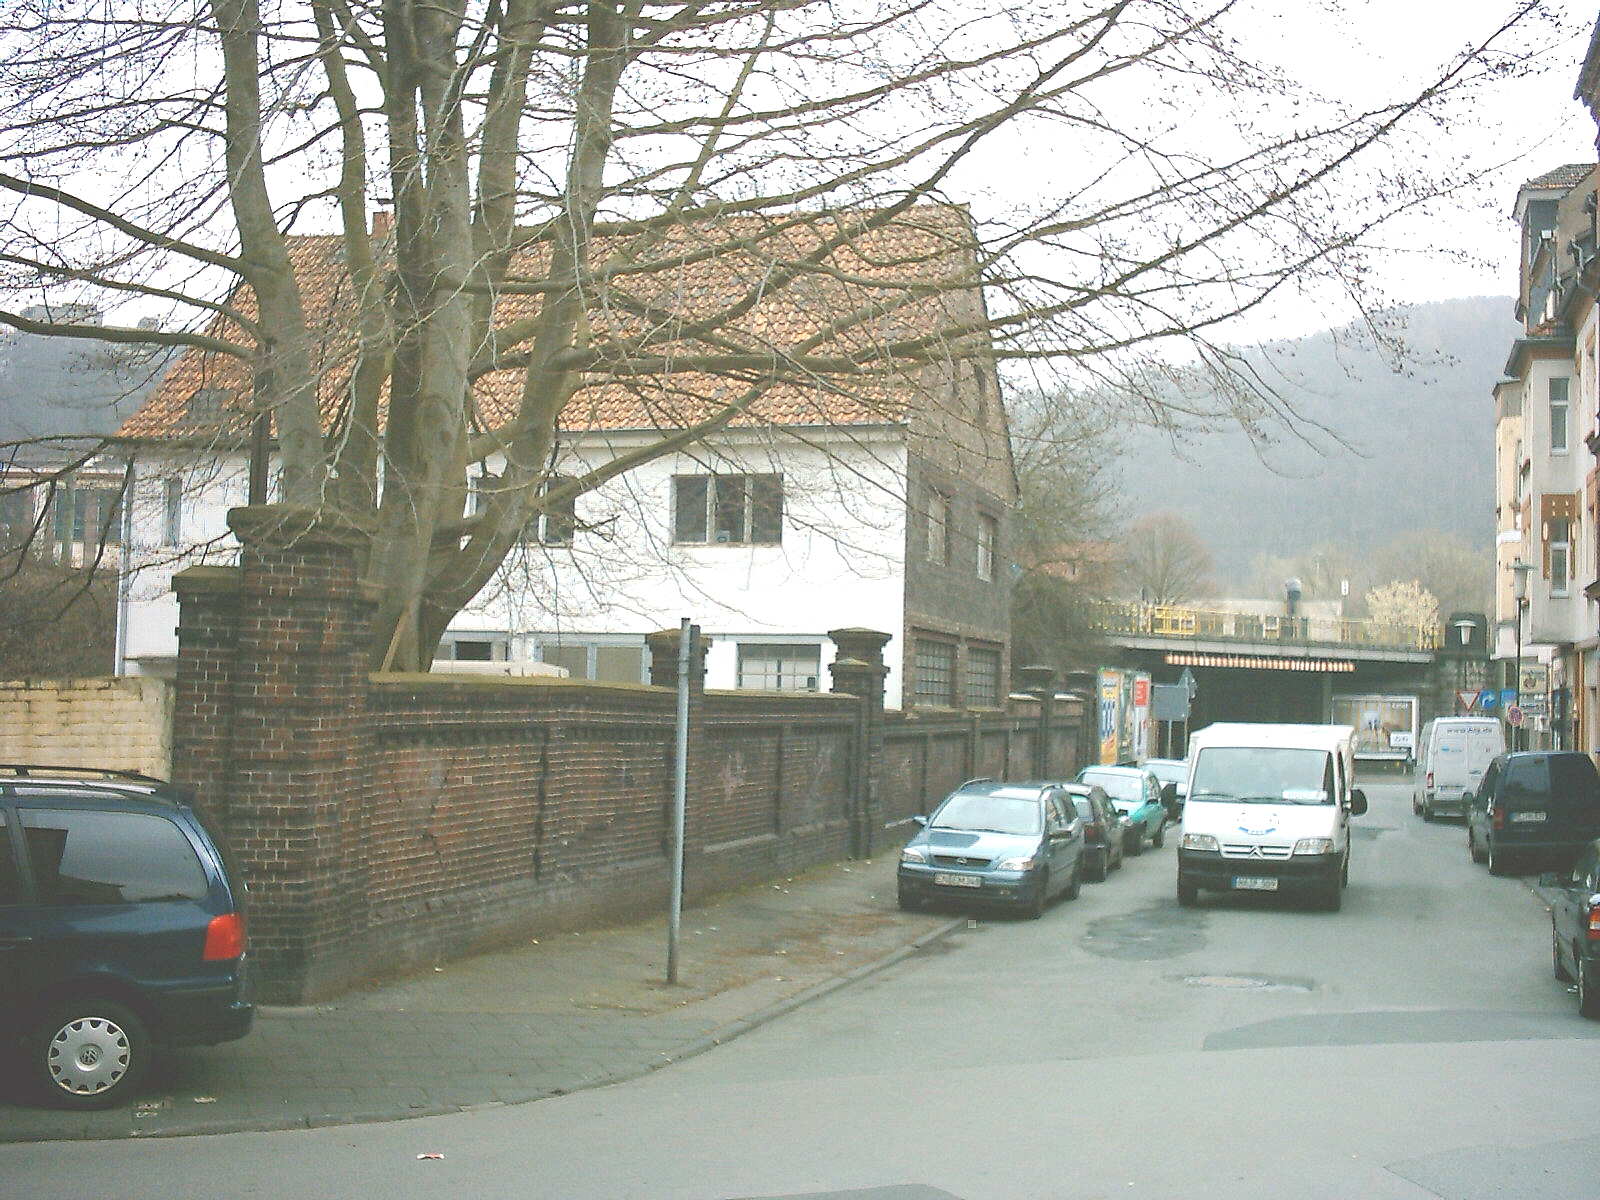 D/NRW/HA/Eilpe/Breddestrasse/20050329_1133_DSCK0004_Jaegerstrassenknick